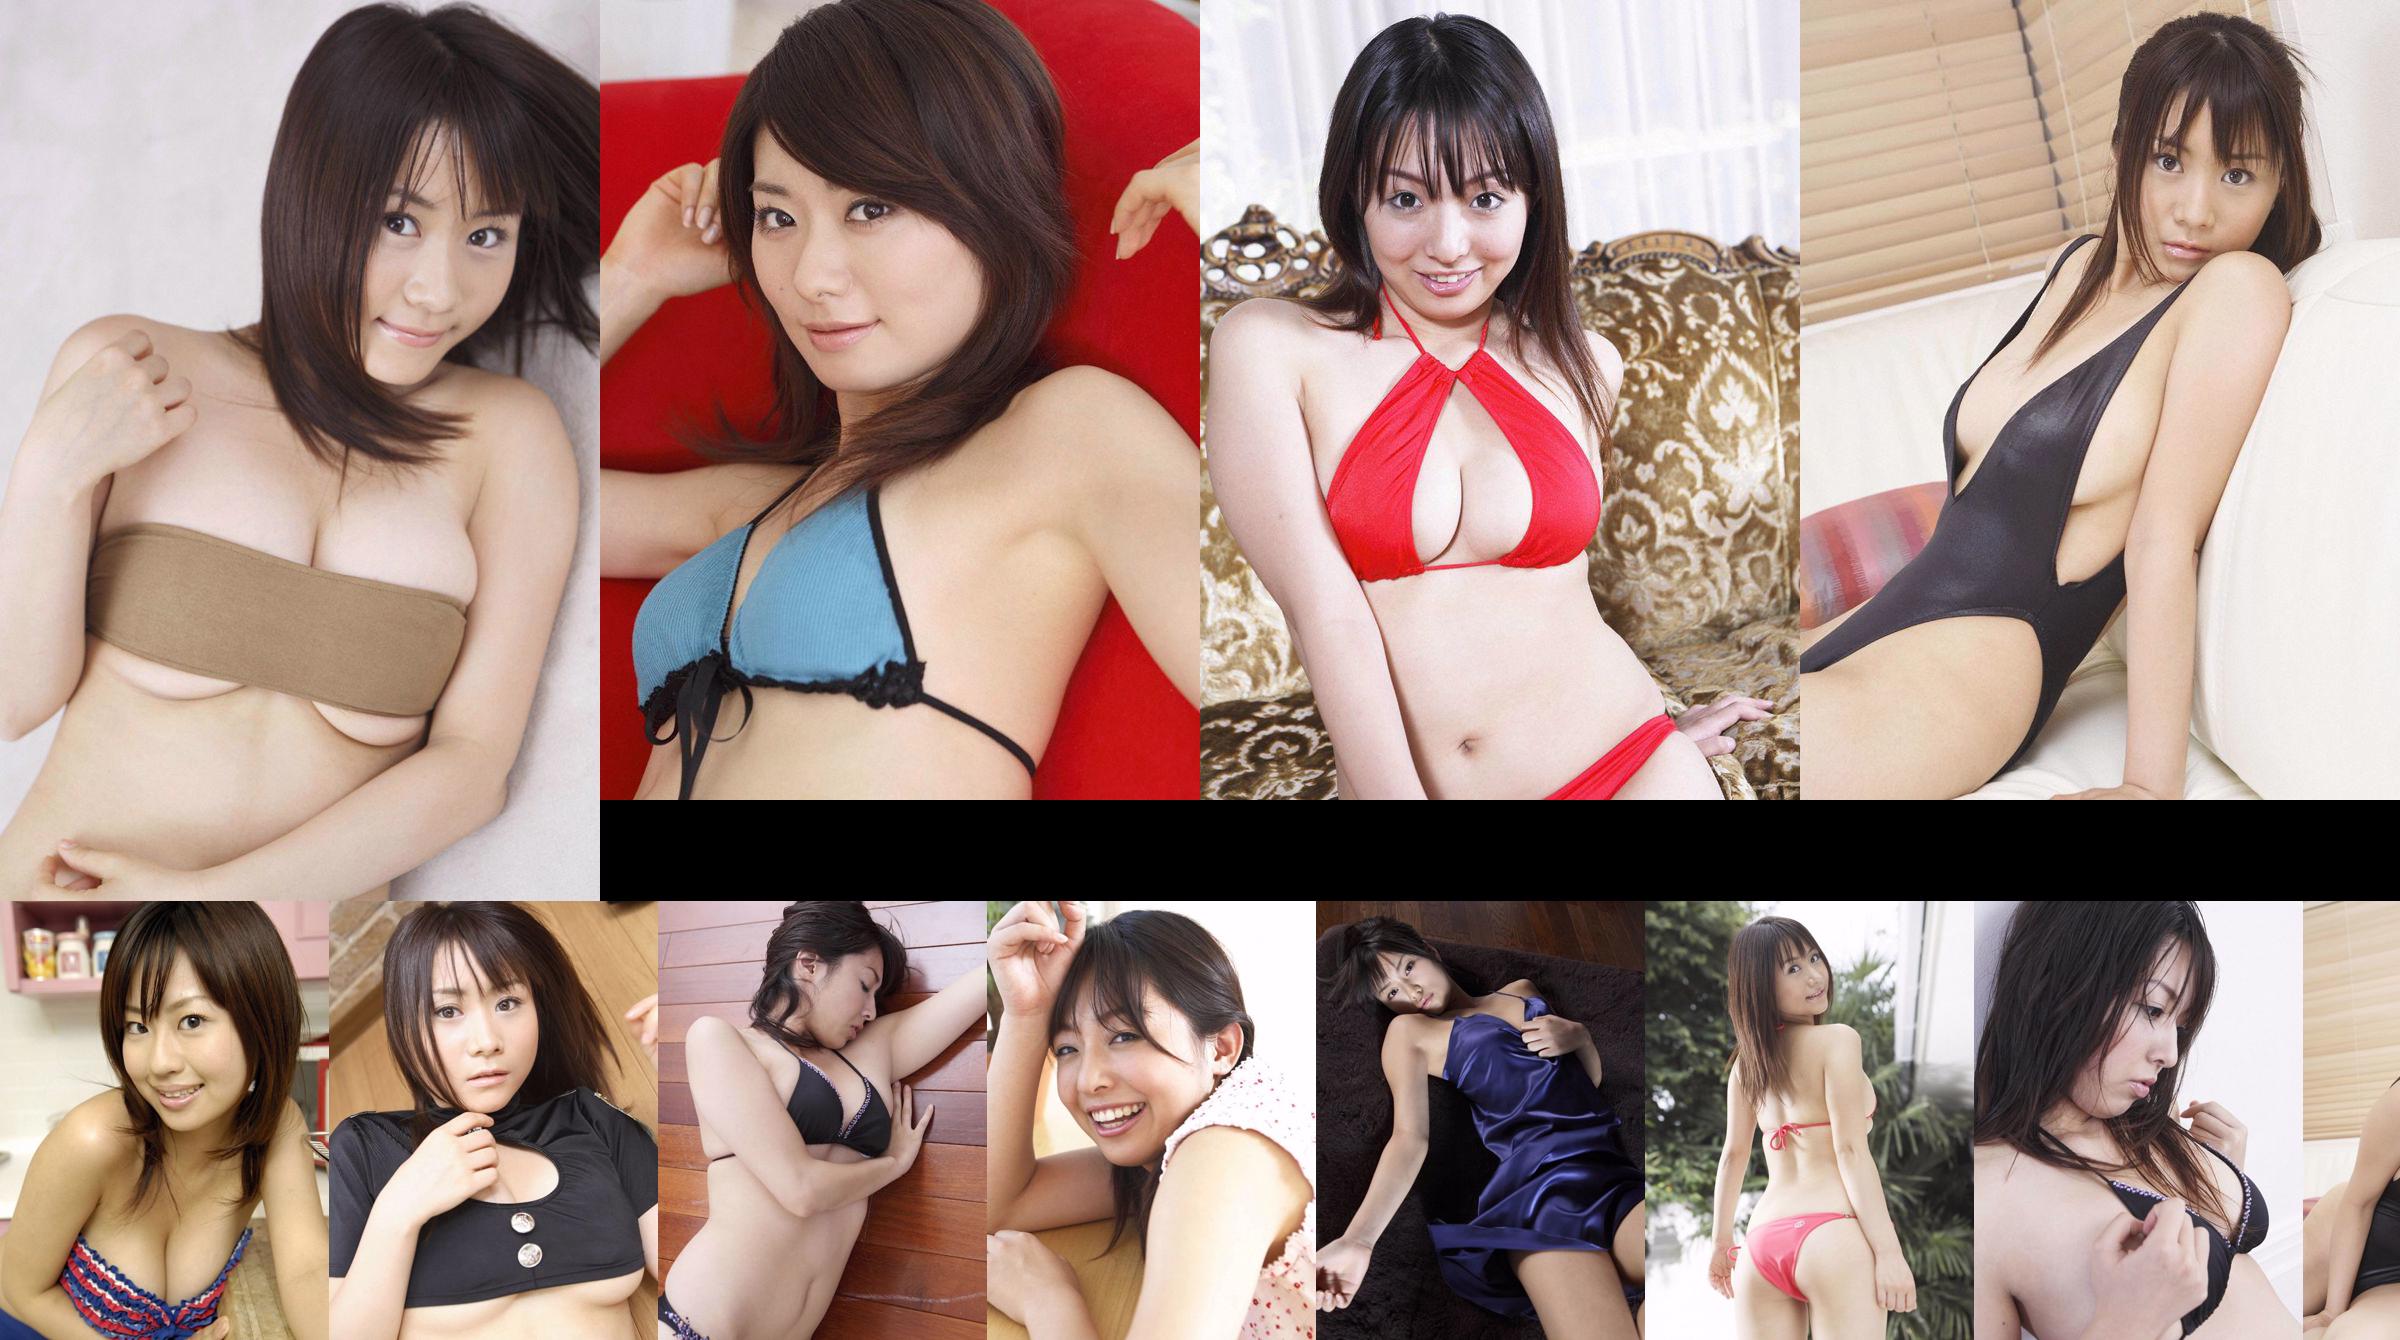 [Wanibooks] NO.37 Ai Arakawa, Hitomi Kaikawa, Hitomi Kitamura, Naomi I, Chii Matsuda Photo Collection No.39aa28 Page 4